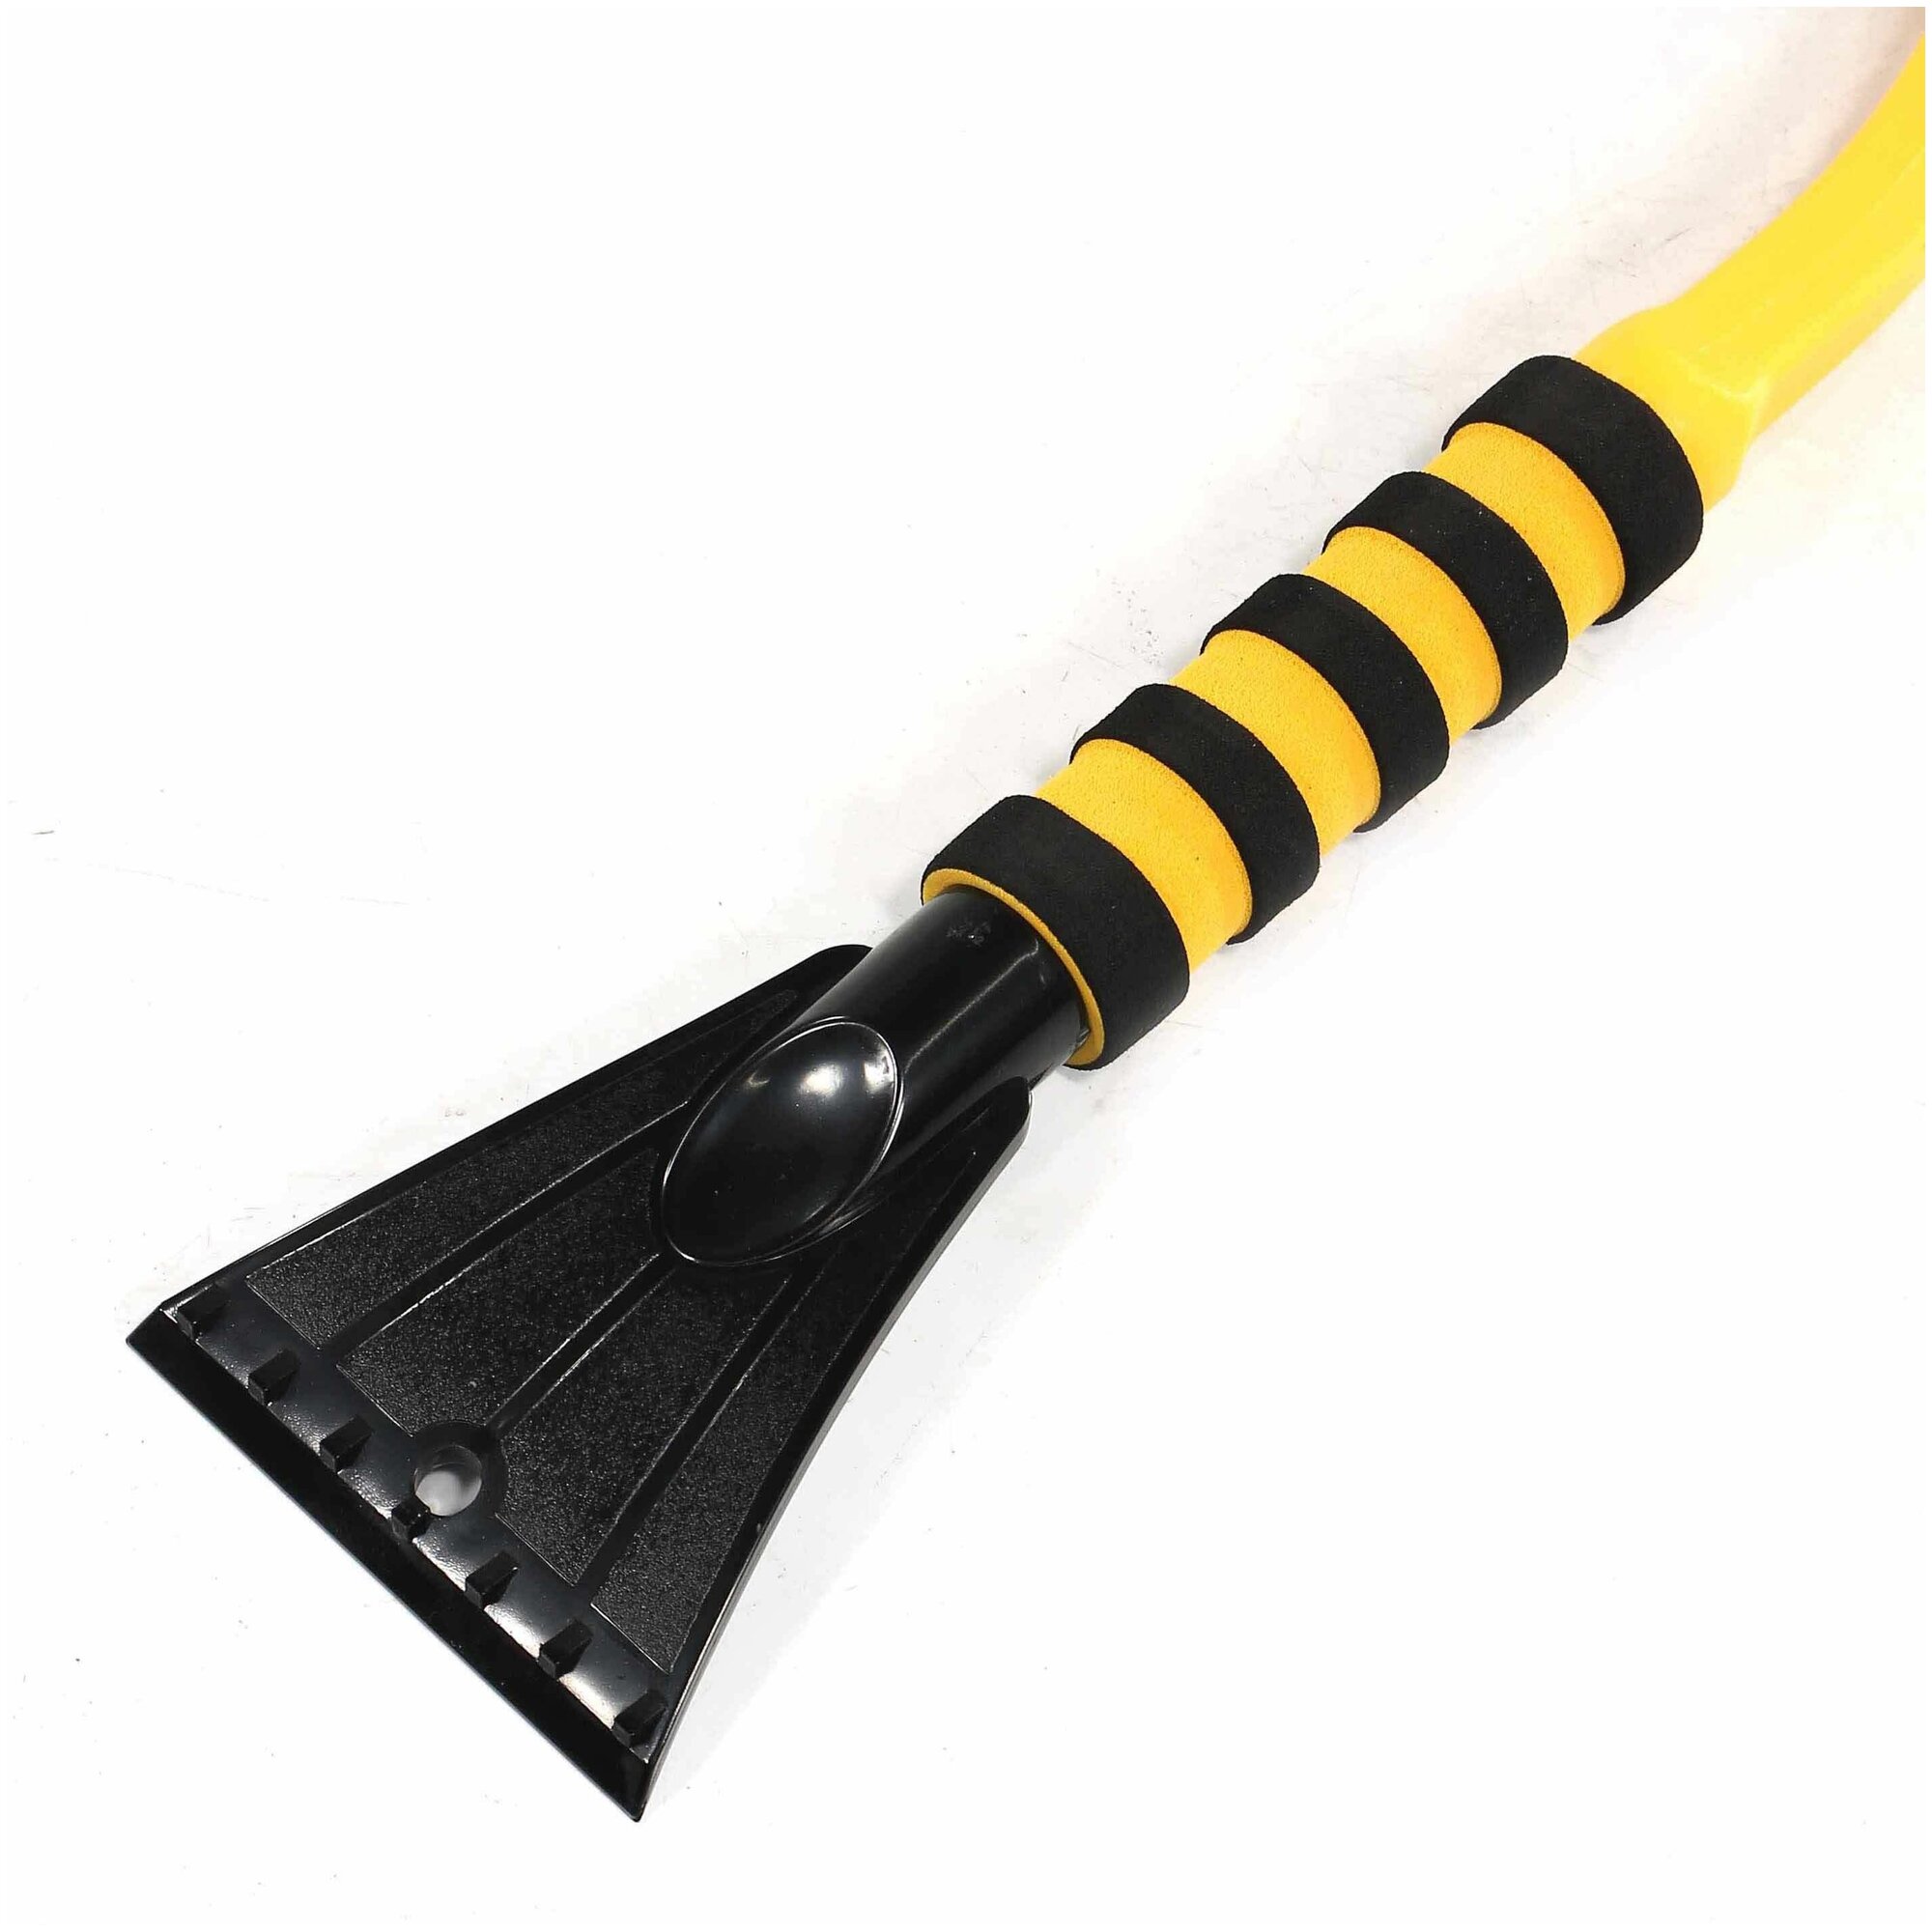 Щетка для снега со скребком Vettler VE SB-6 мягкая ручка желтый 60